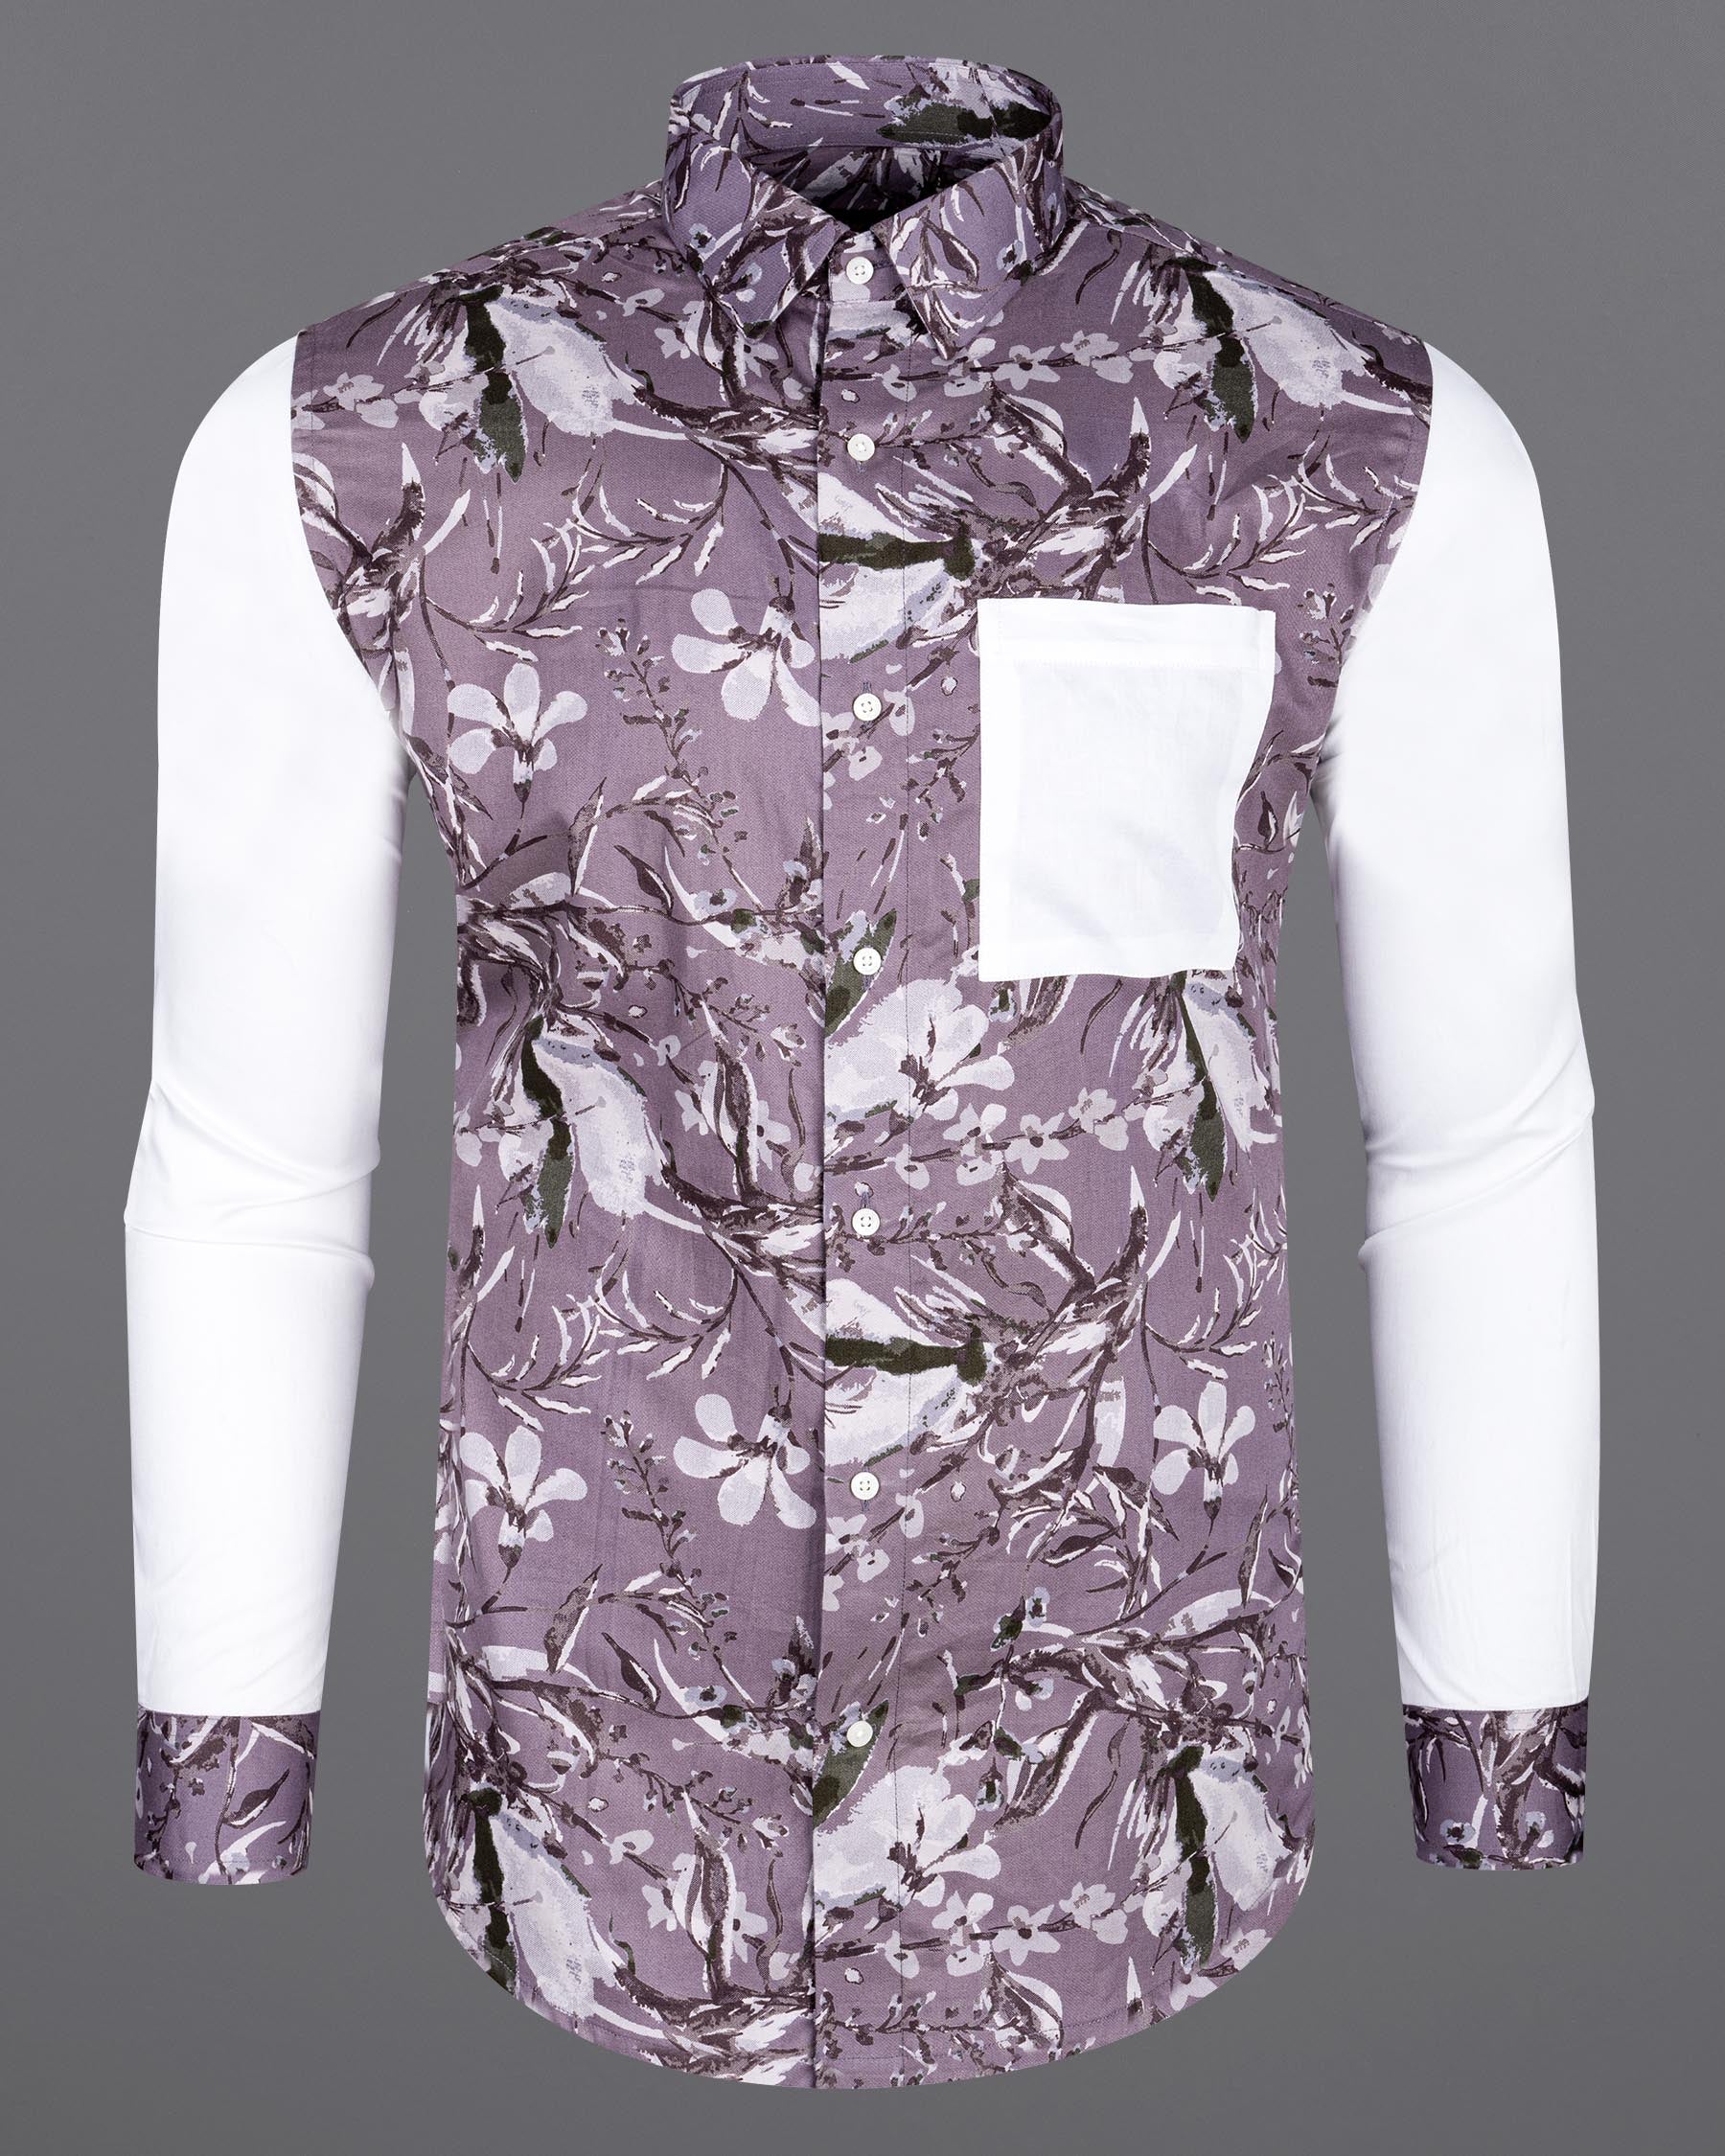 White and Bouquet Purple Floral Print Super Soft Premium Cotton designer Shirt 6991-P138-38,6991-P138-38,6991-P138-39,6991-P138-39,6991-P138-40,6991-P138-40,6991-P138-42,6991-P138-42,6991-P138-44,6991-P138-44,6991-P138-46,6991-P138-46,6991-P138-48,6991-P138-48,6991-P138-50,6991-P138-50,6991-P138-52,6991-P138-52